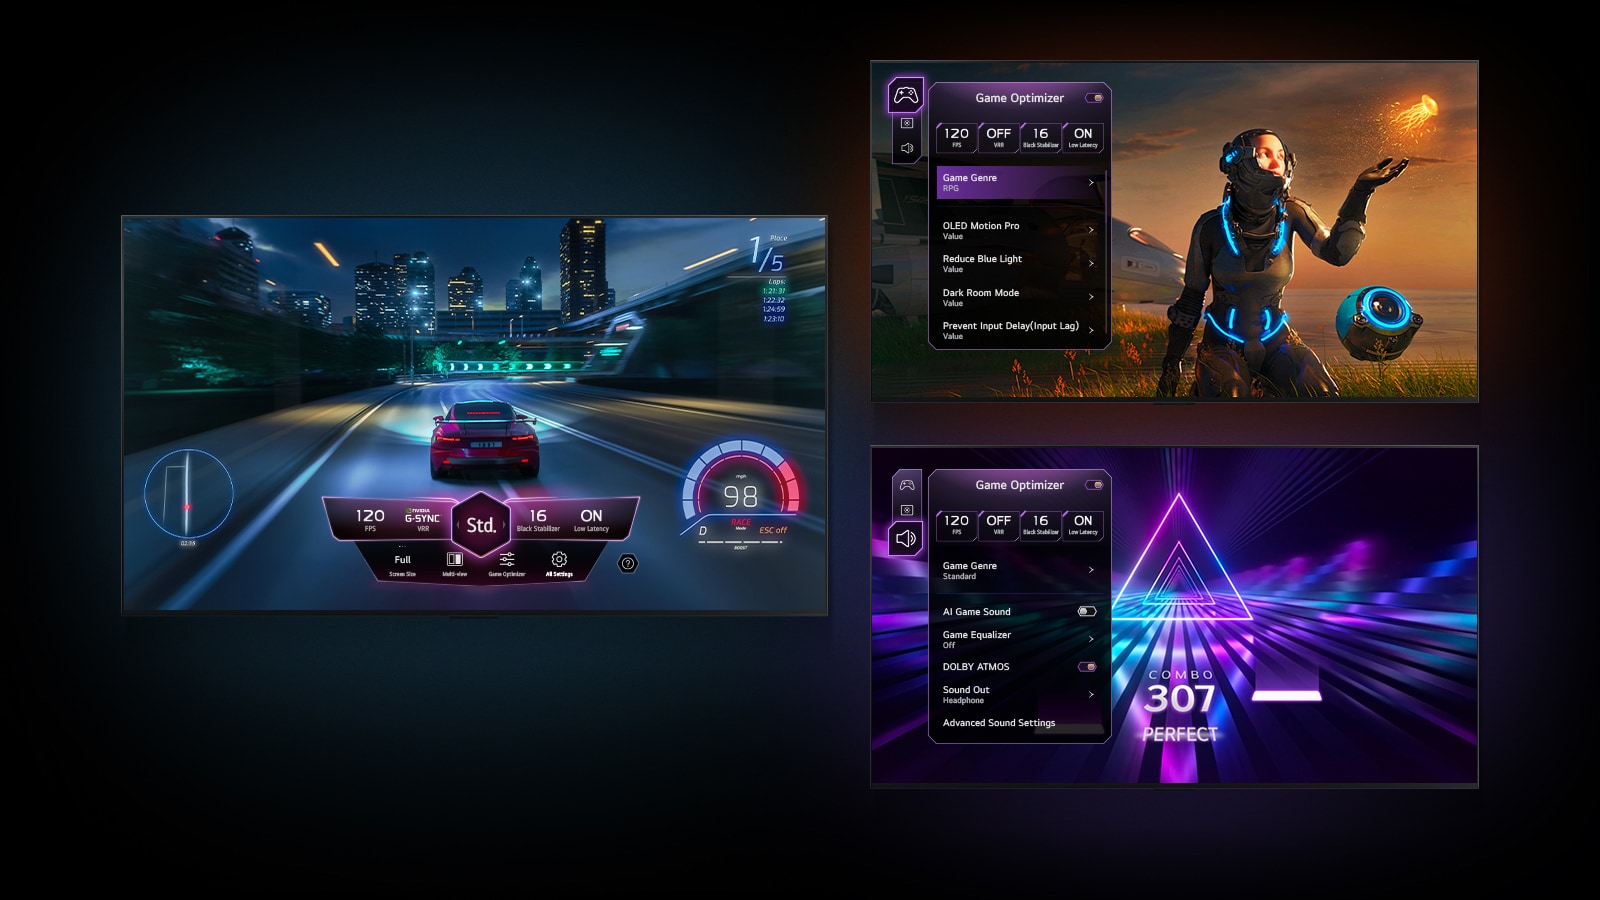 Trzy sceny z gry ukazane na czarnym gradientowym tle. Jedna przedstawia grę wyścigową z Pulpitem gry unoszącym się nad obrazem. Druga przedstawia grę Sci-Fi z menu Game Optimizer. Trzecia przedstawia kartę gry Game Optimizer nad grą muzyczną.